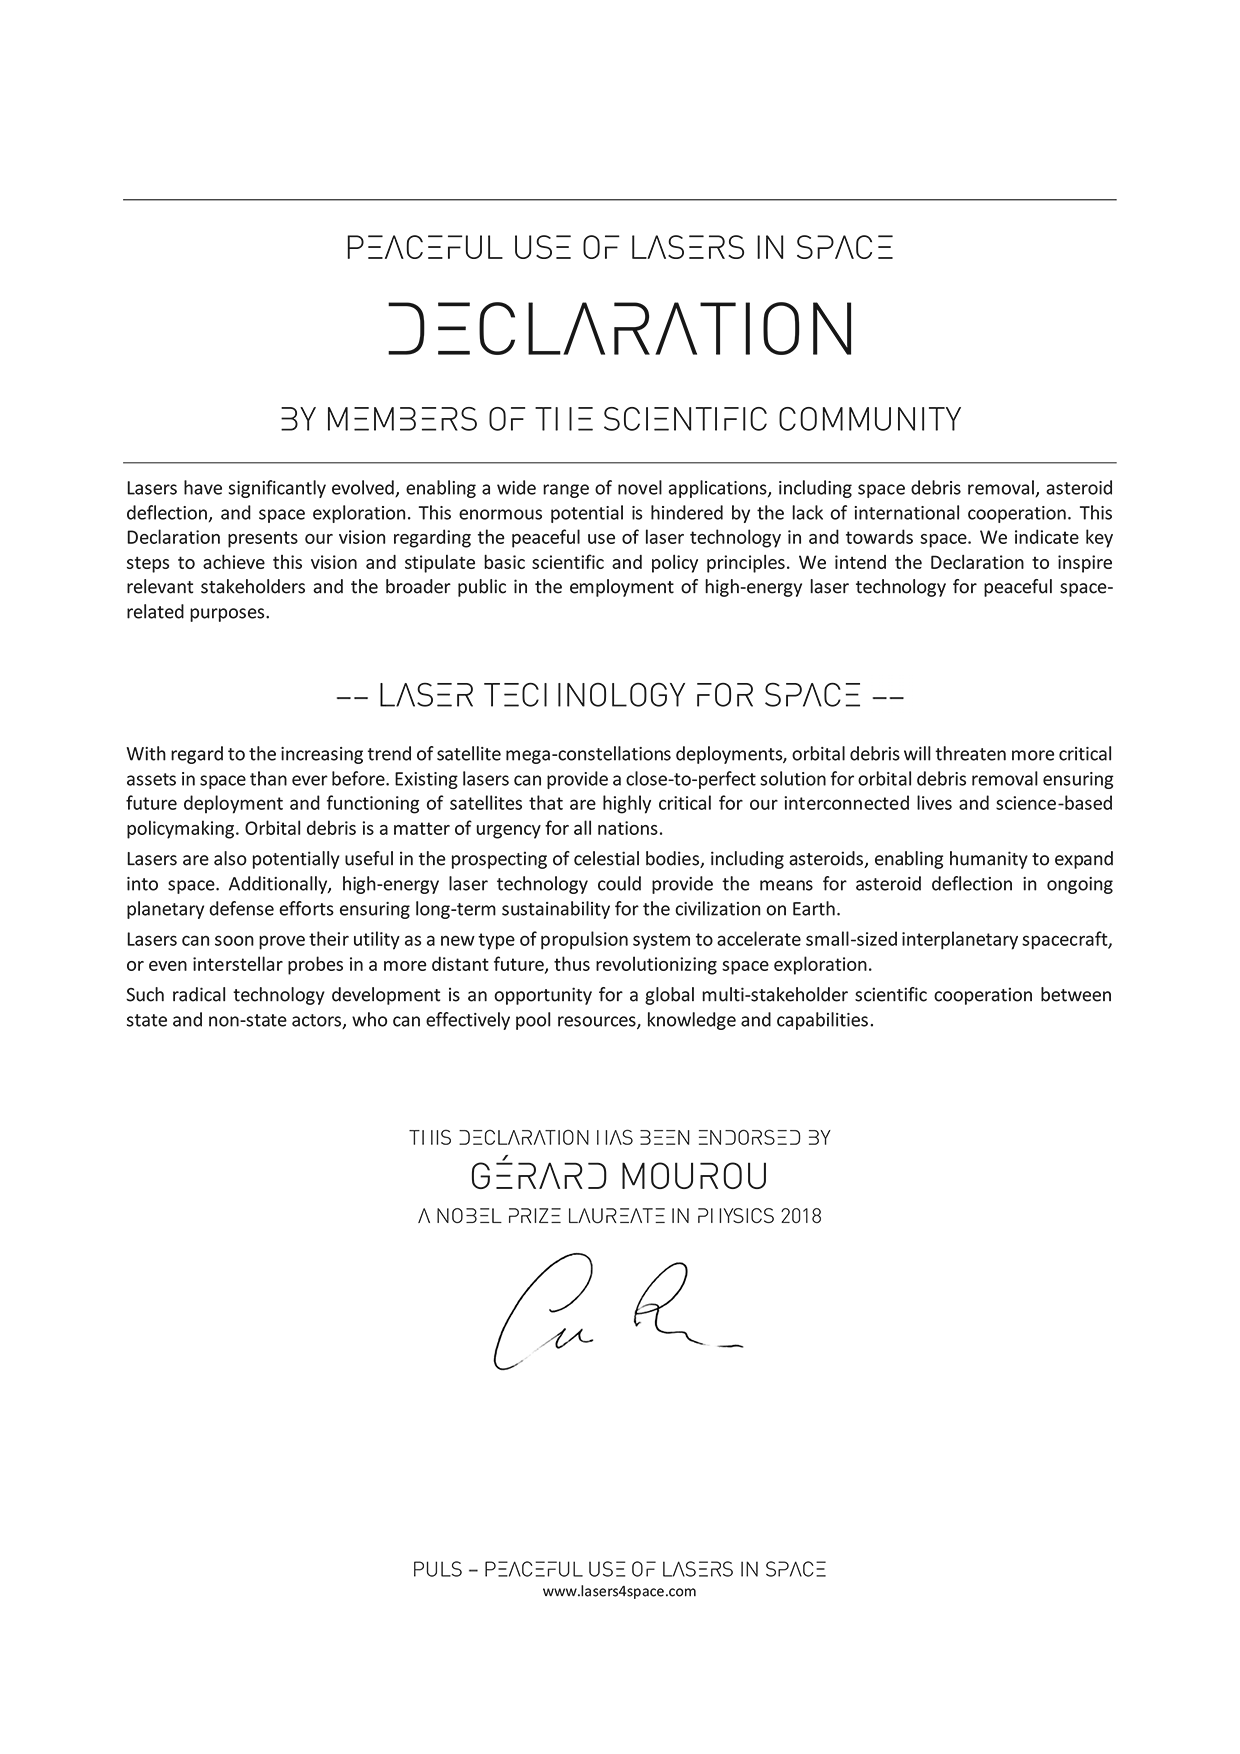 PULS - Declaration - eng - v5